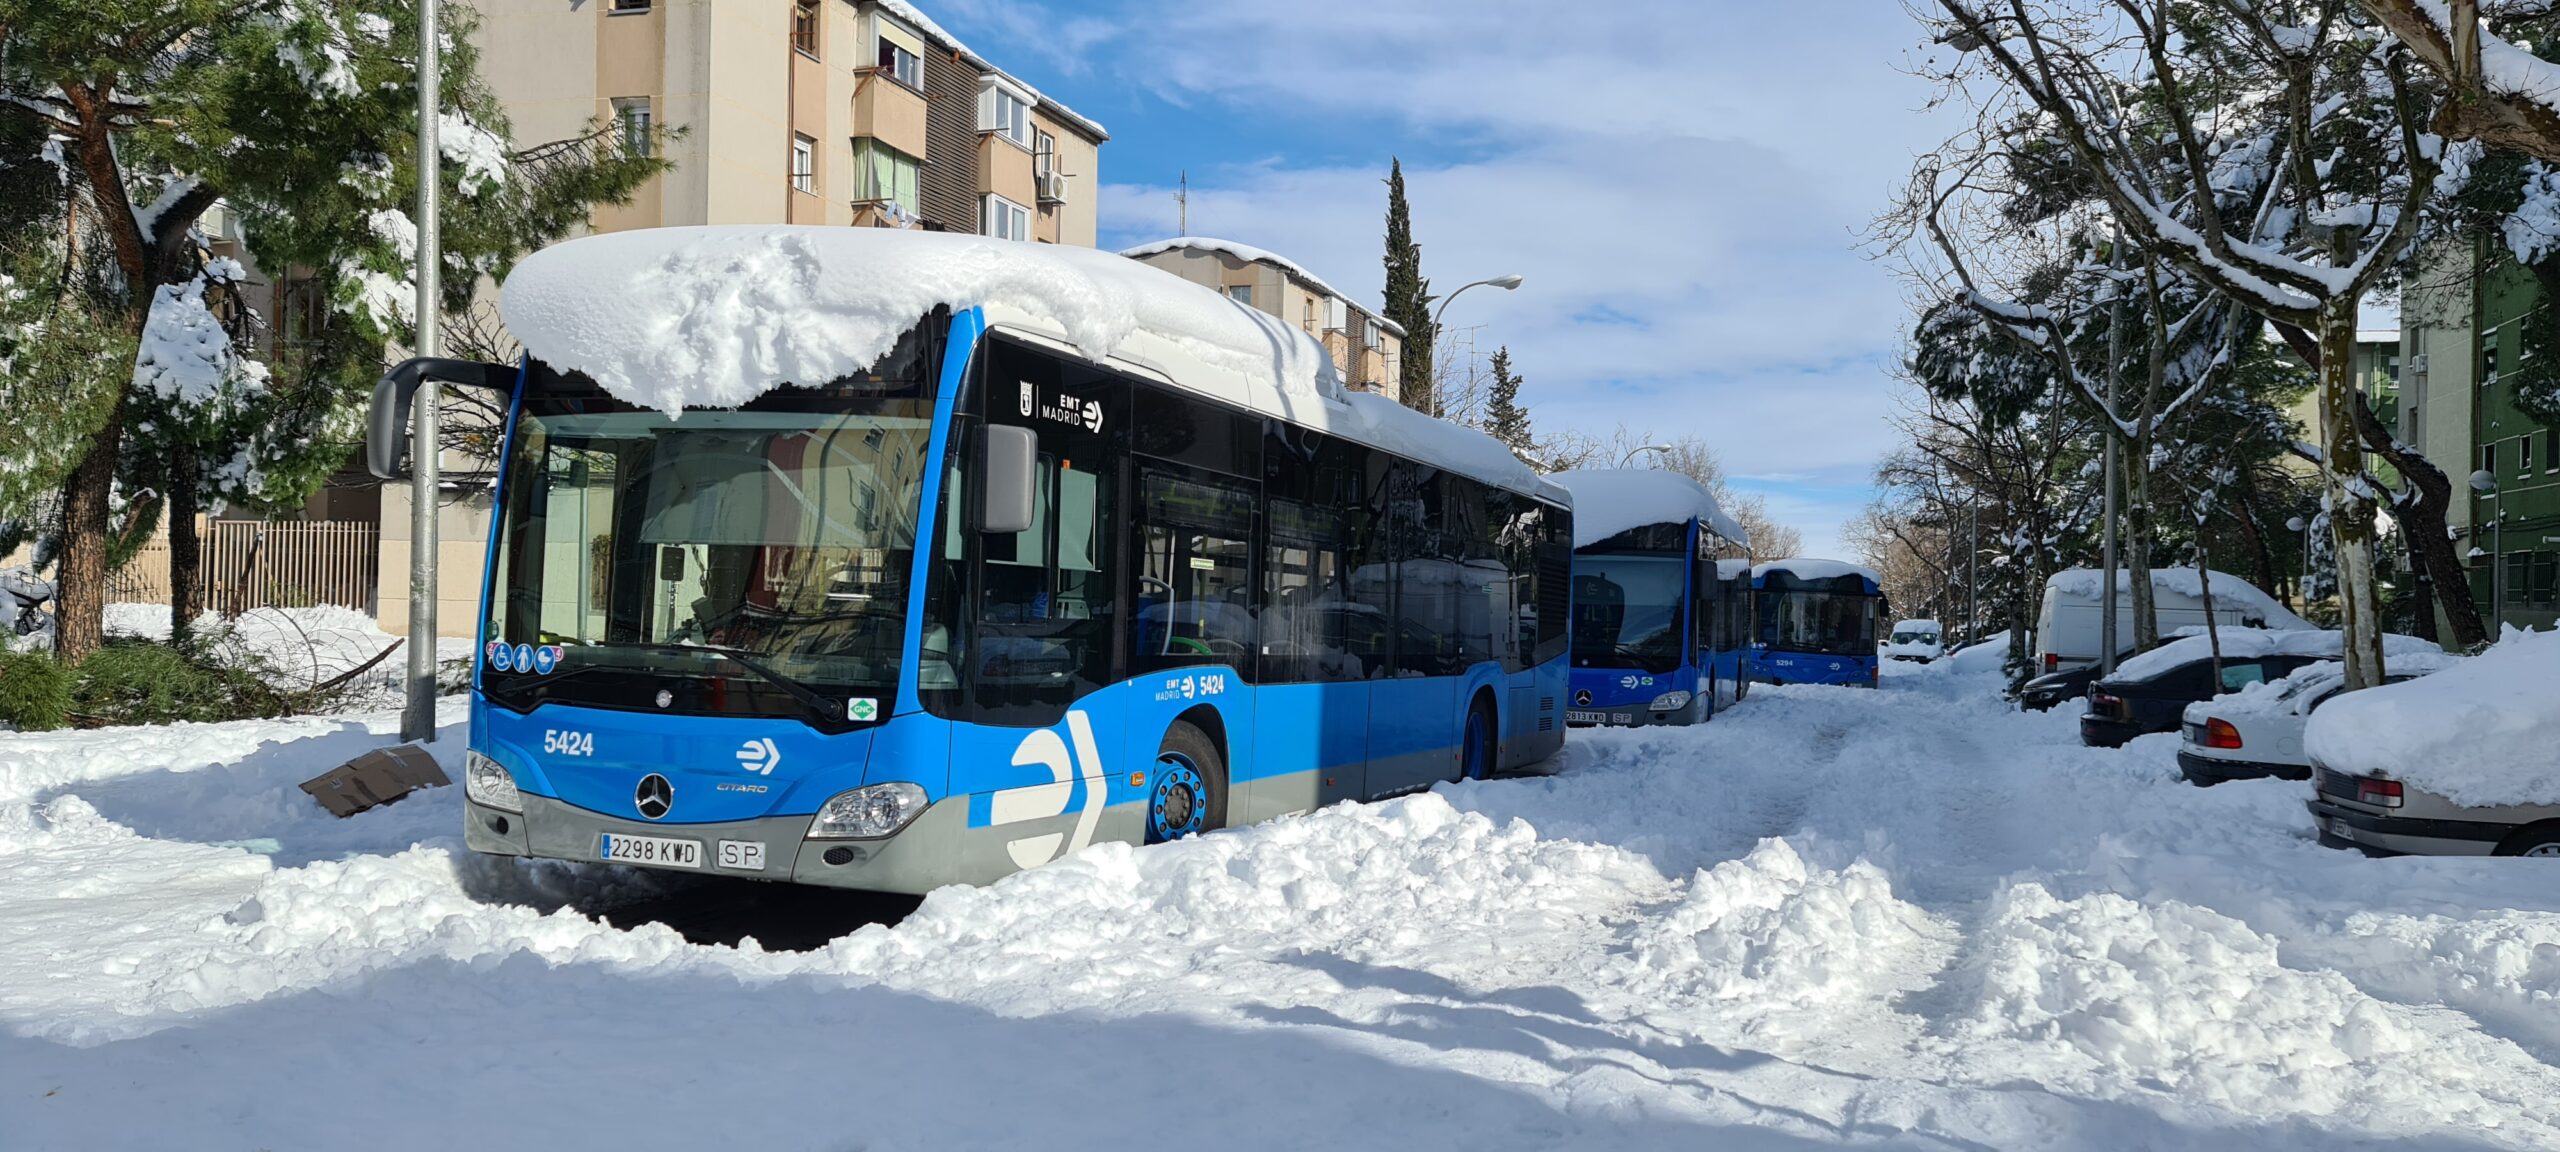 Заваленные снегом автобусы. Фото Marcial RodrÃ­Guez/Contacto via ZUMA Press/Scanpix/Leta